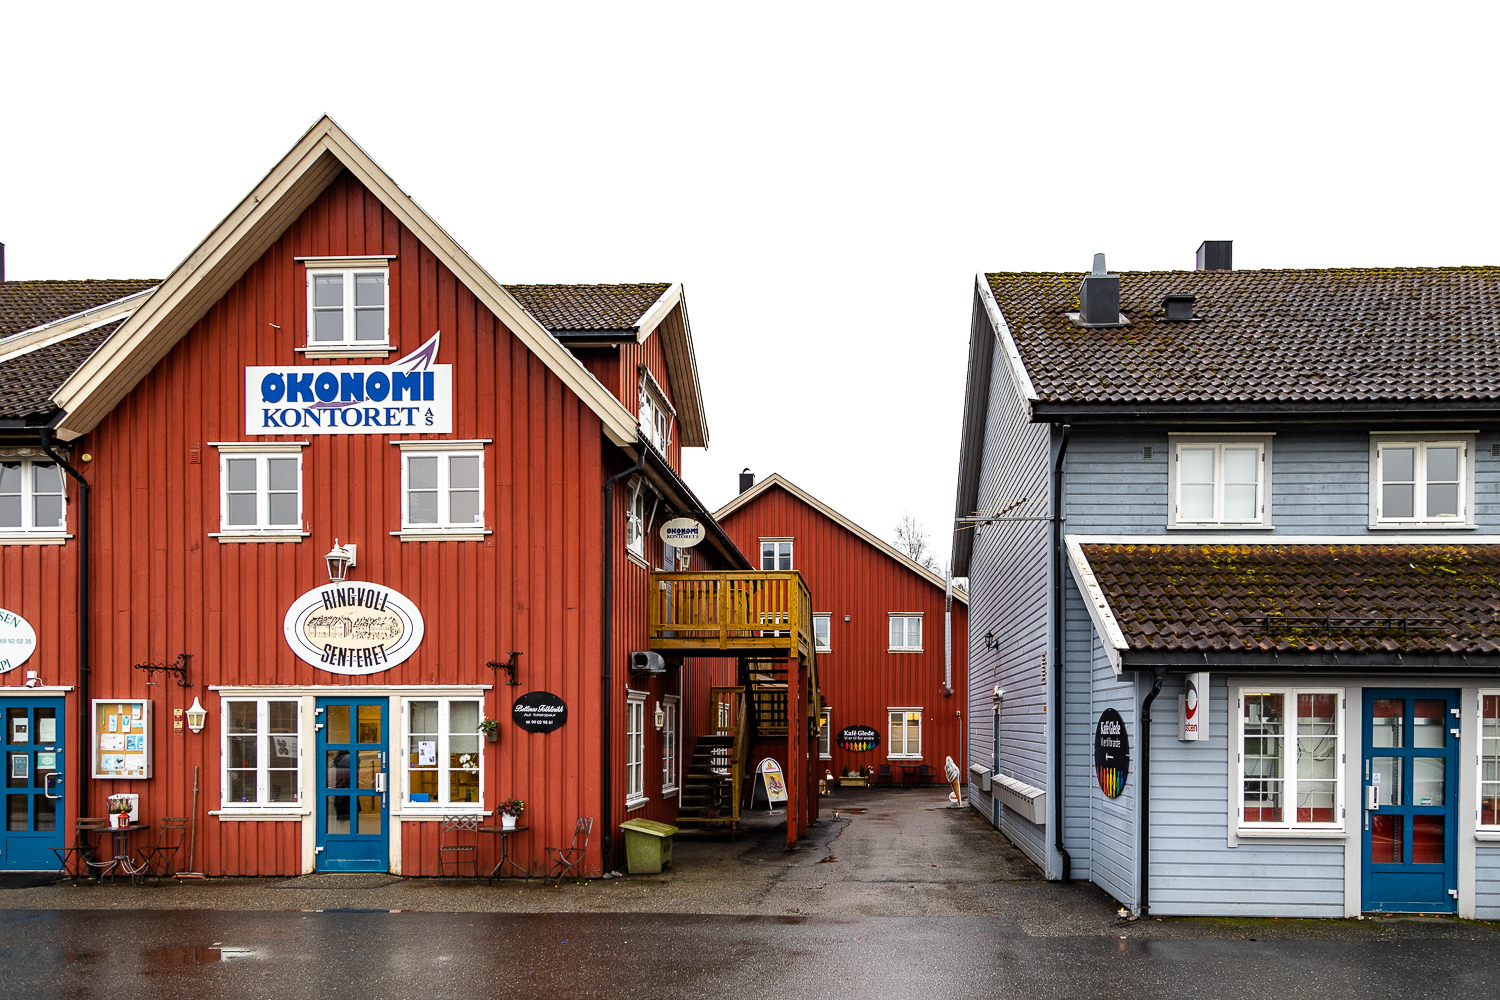 Oversiktsbilde over noe av Ringvoll Senter i Hobøl. Til venstre er et rødt trehus hvor Økonomikontoret AS og Bettinas Fotklinikk holder til, og til høre i det lyseblå trehuset finnes Posten og daglivare.